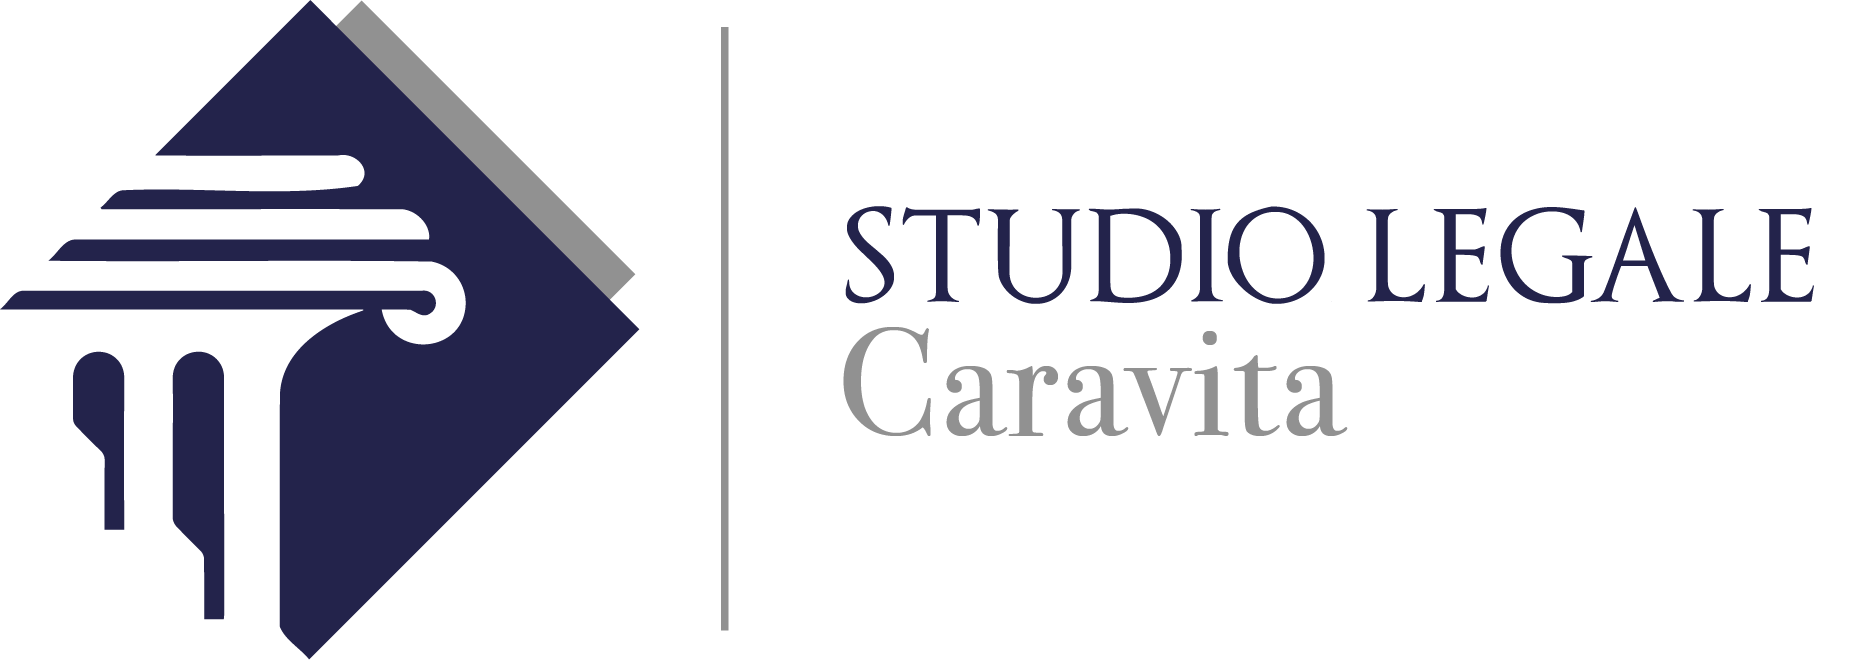 Studio legale Caravita